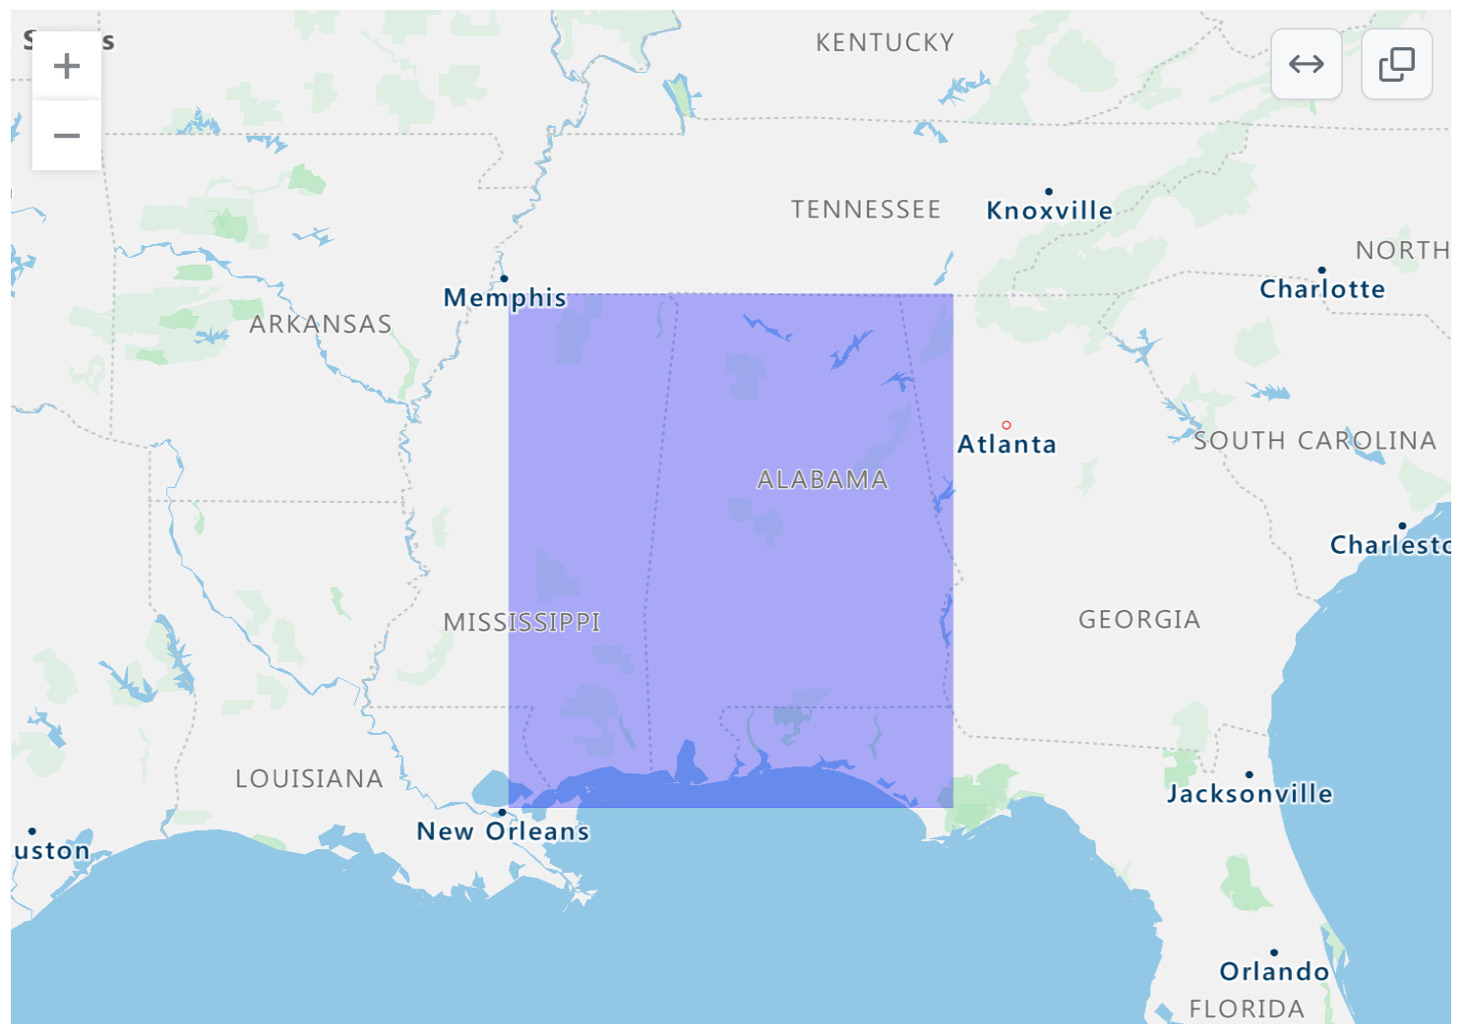 米国東南部をレンダリングした GeoJSON 地図のスクリーンショット。紫色の四角いオーバーレイがアラバマとミシシッピに掛かっています。